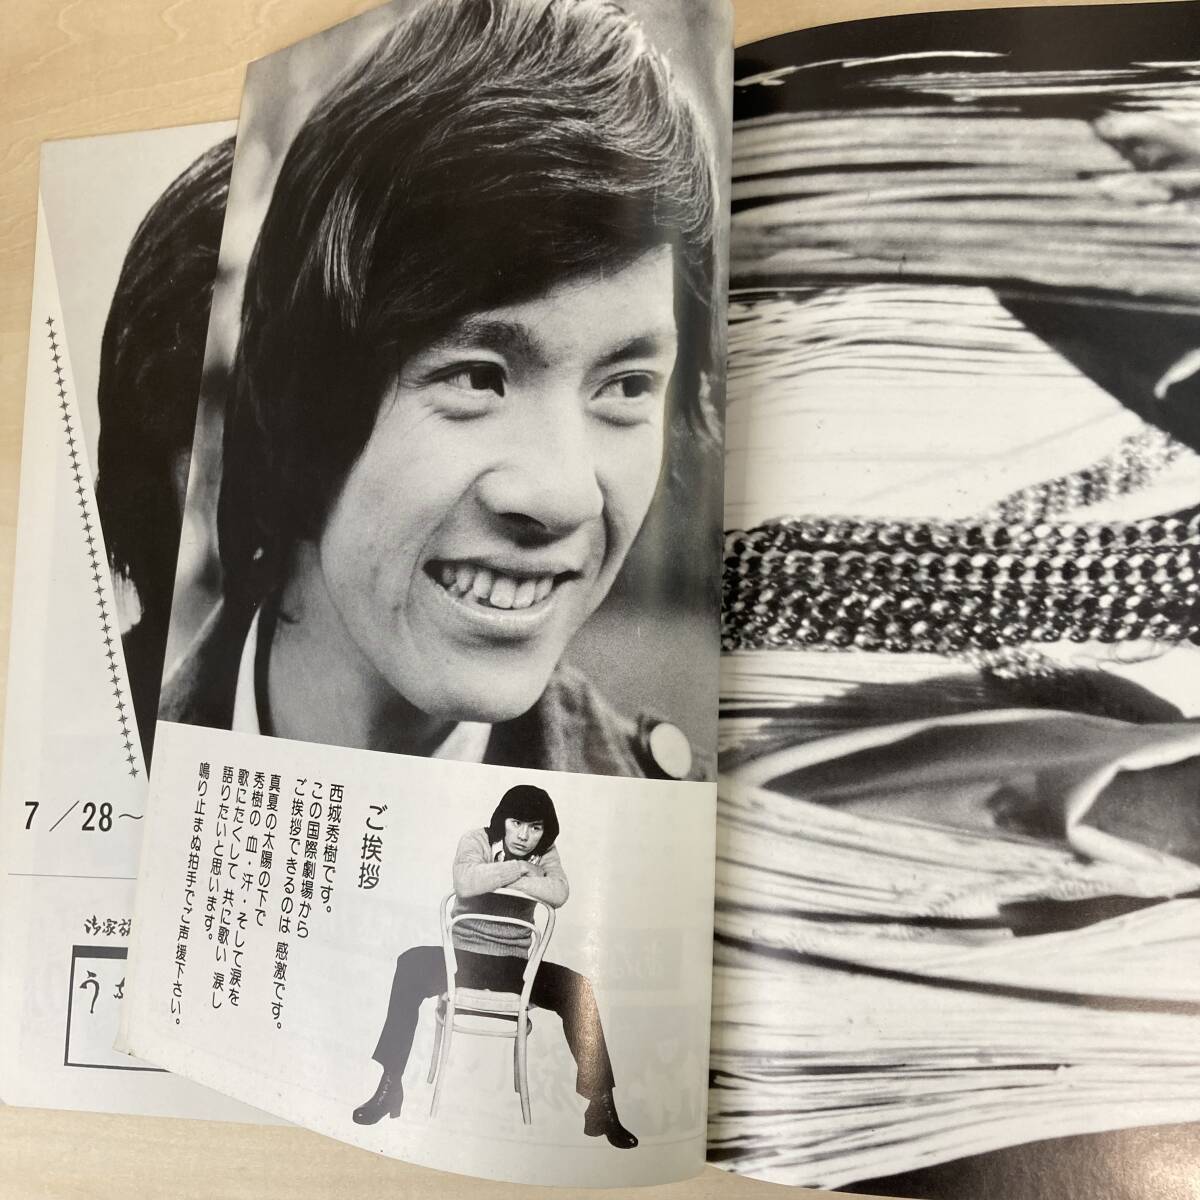 西城秀樹 国際劇場 1974年 昭和49年 リサイタル パンフレット SUNRISE IN KOKUSAI 綴じ込みピンナップポスター付き_画像5